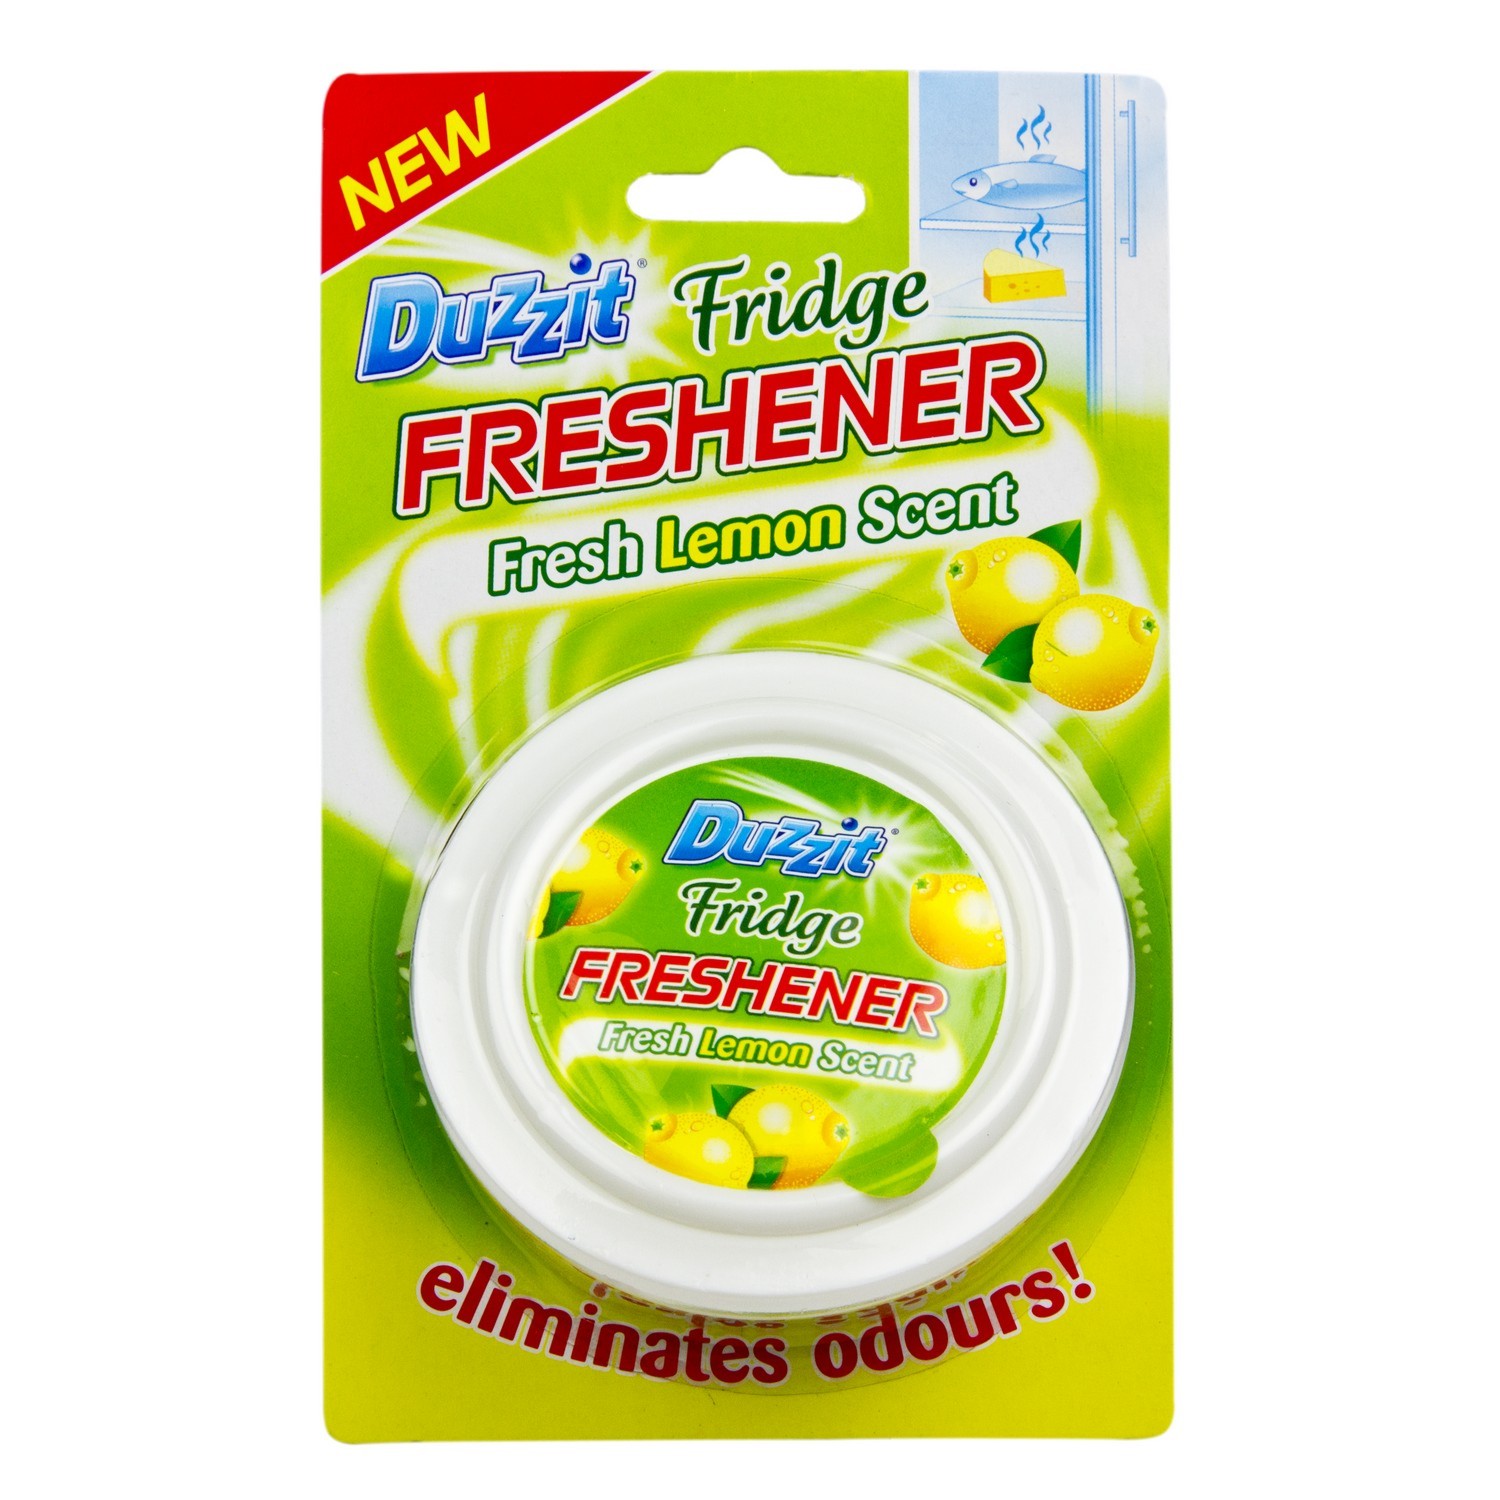 Duzzit Fresh Lemon Fridge Freshener Image 2